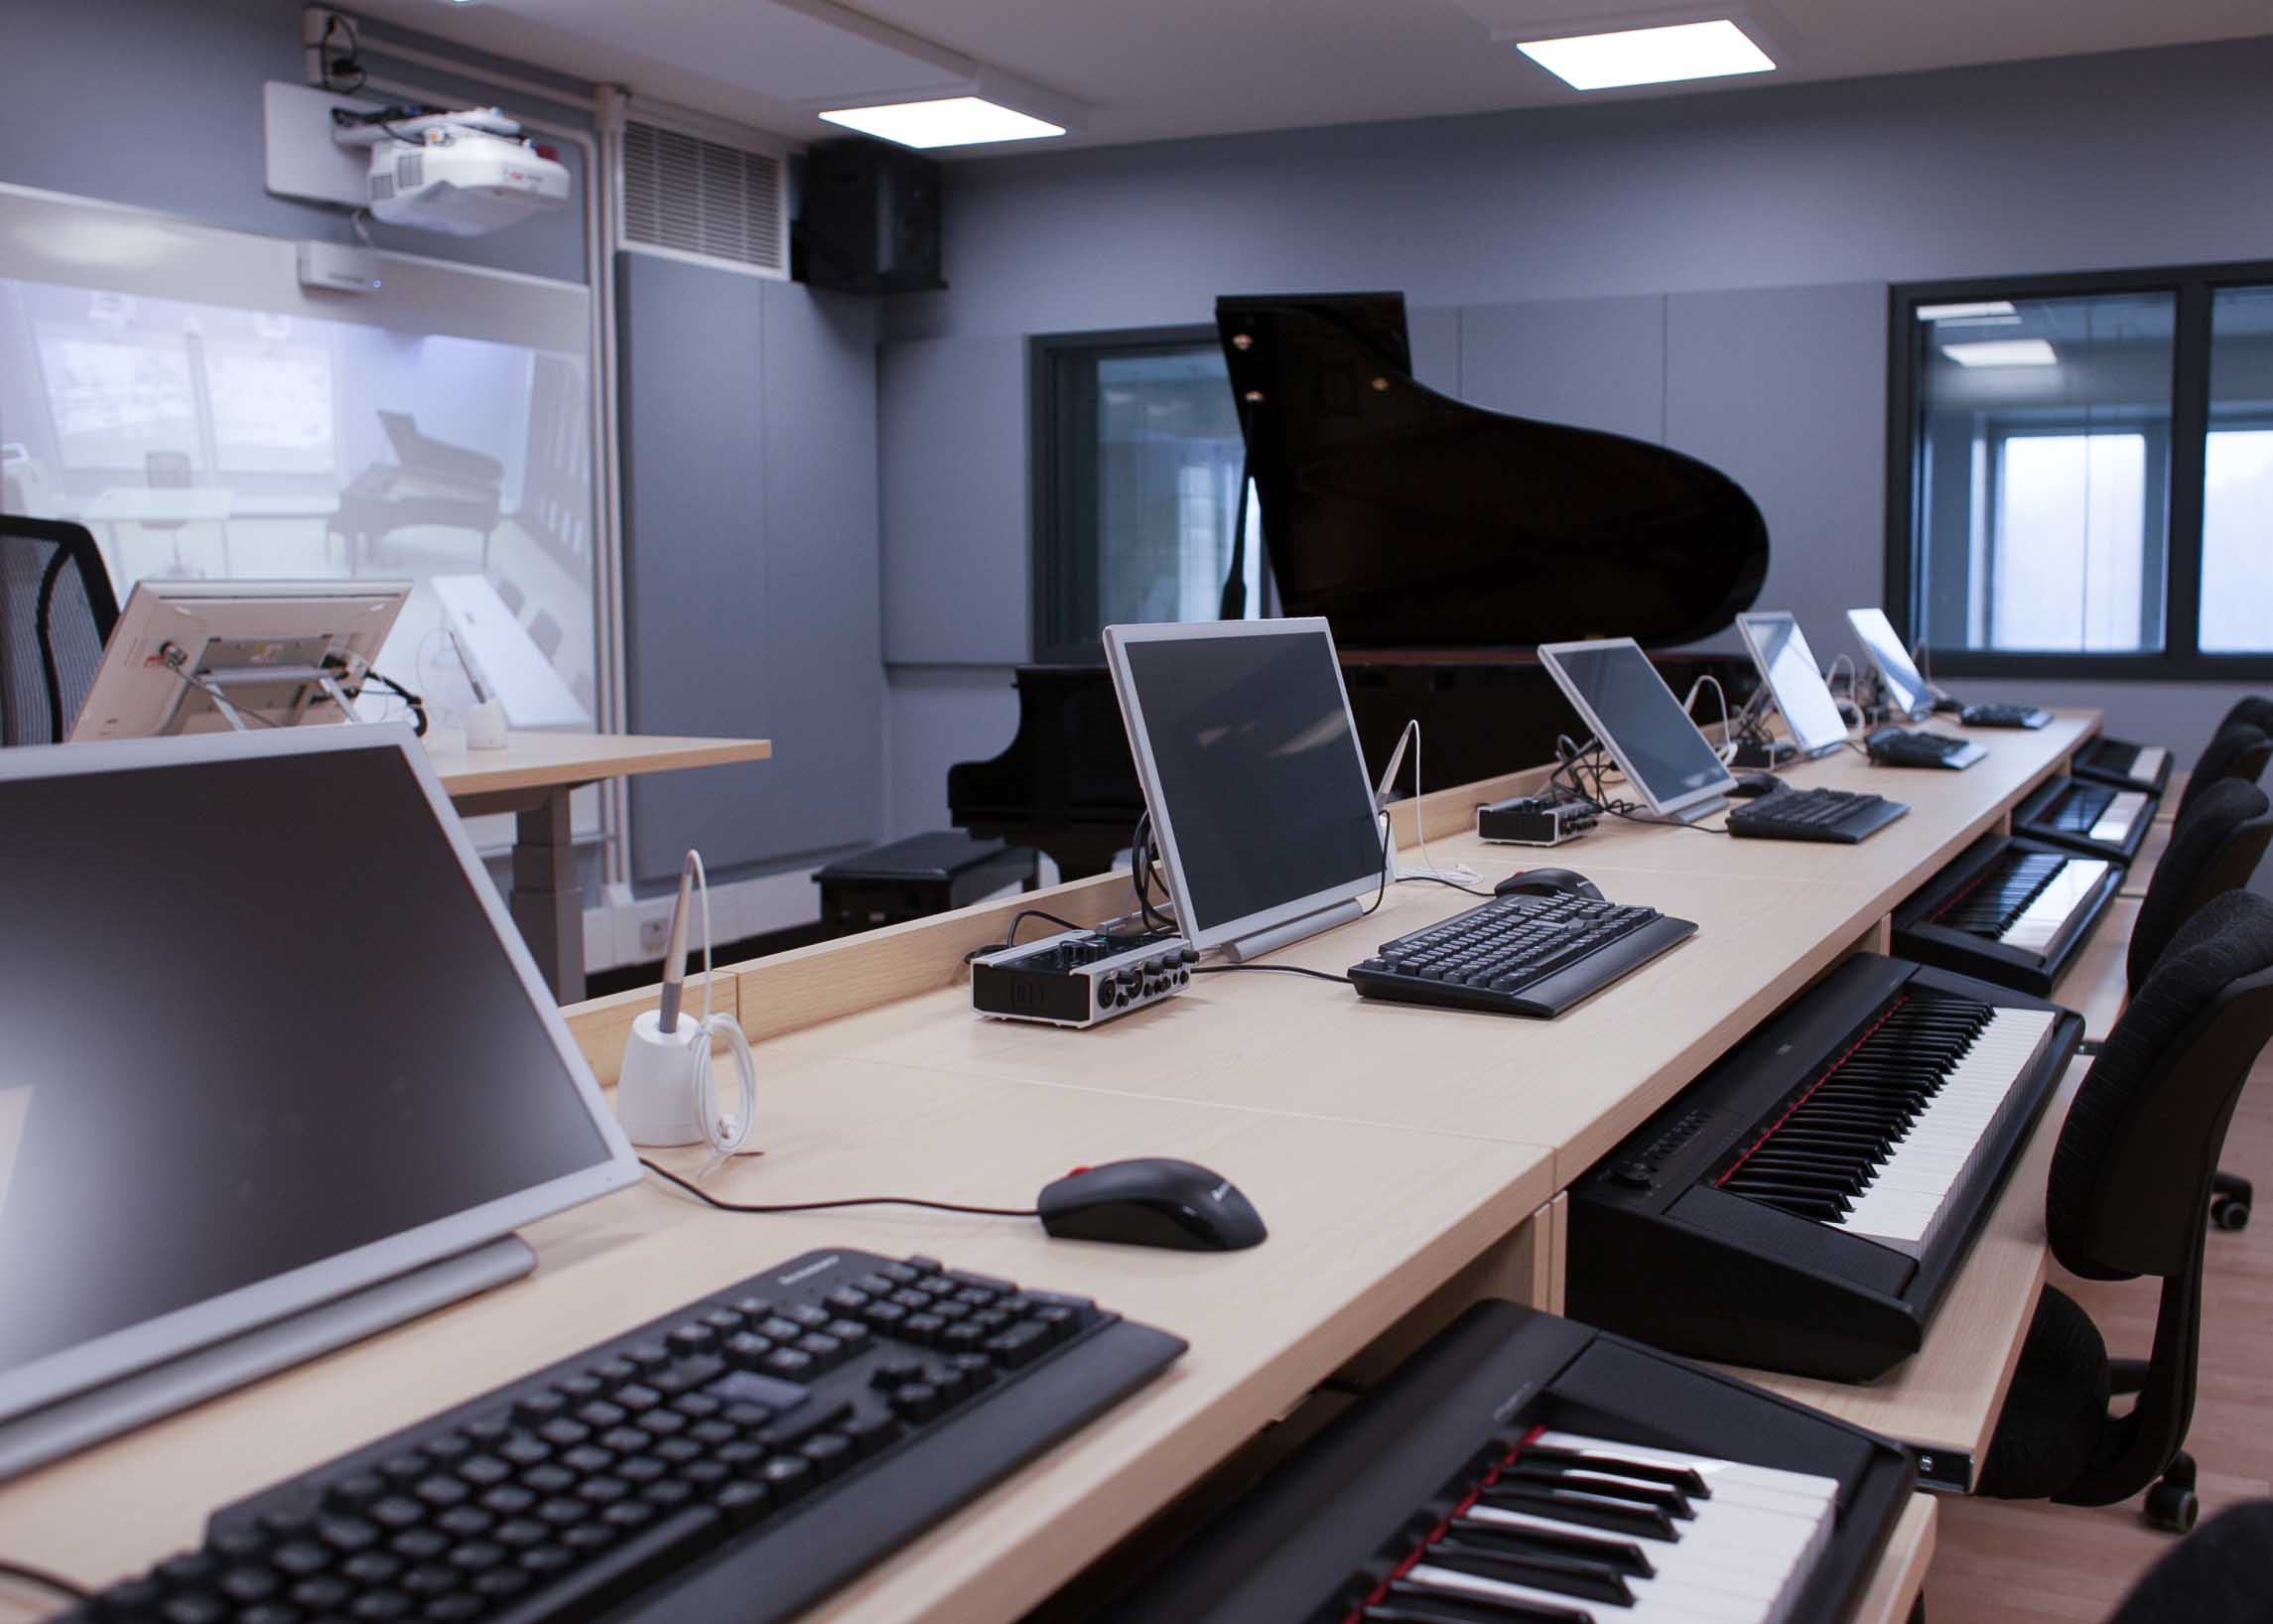 Laboratoire avec piano et postes accompagnées d'appareillage électronique et de claviers